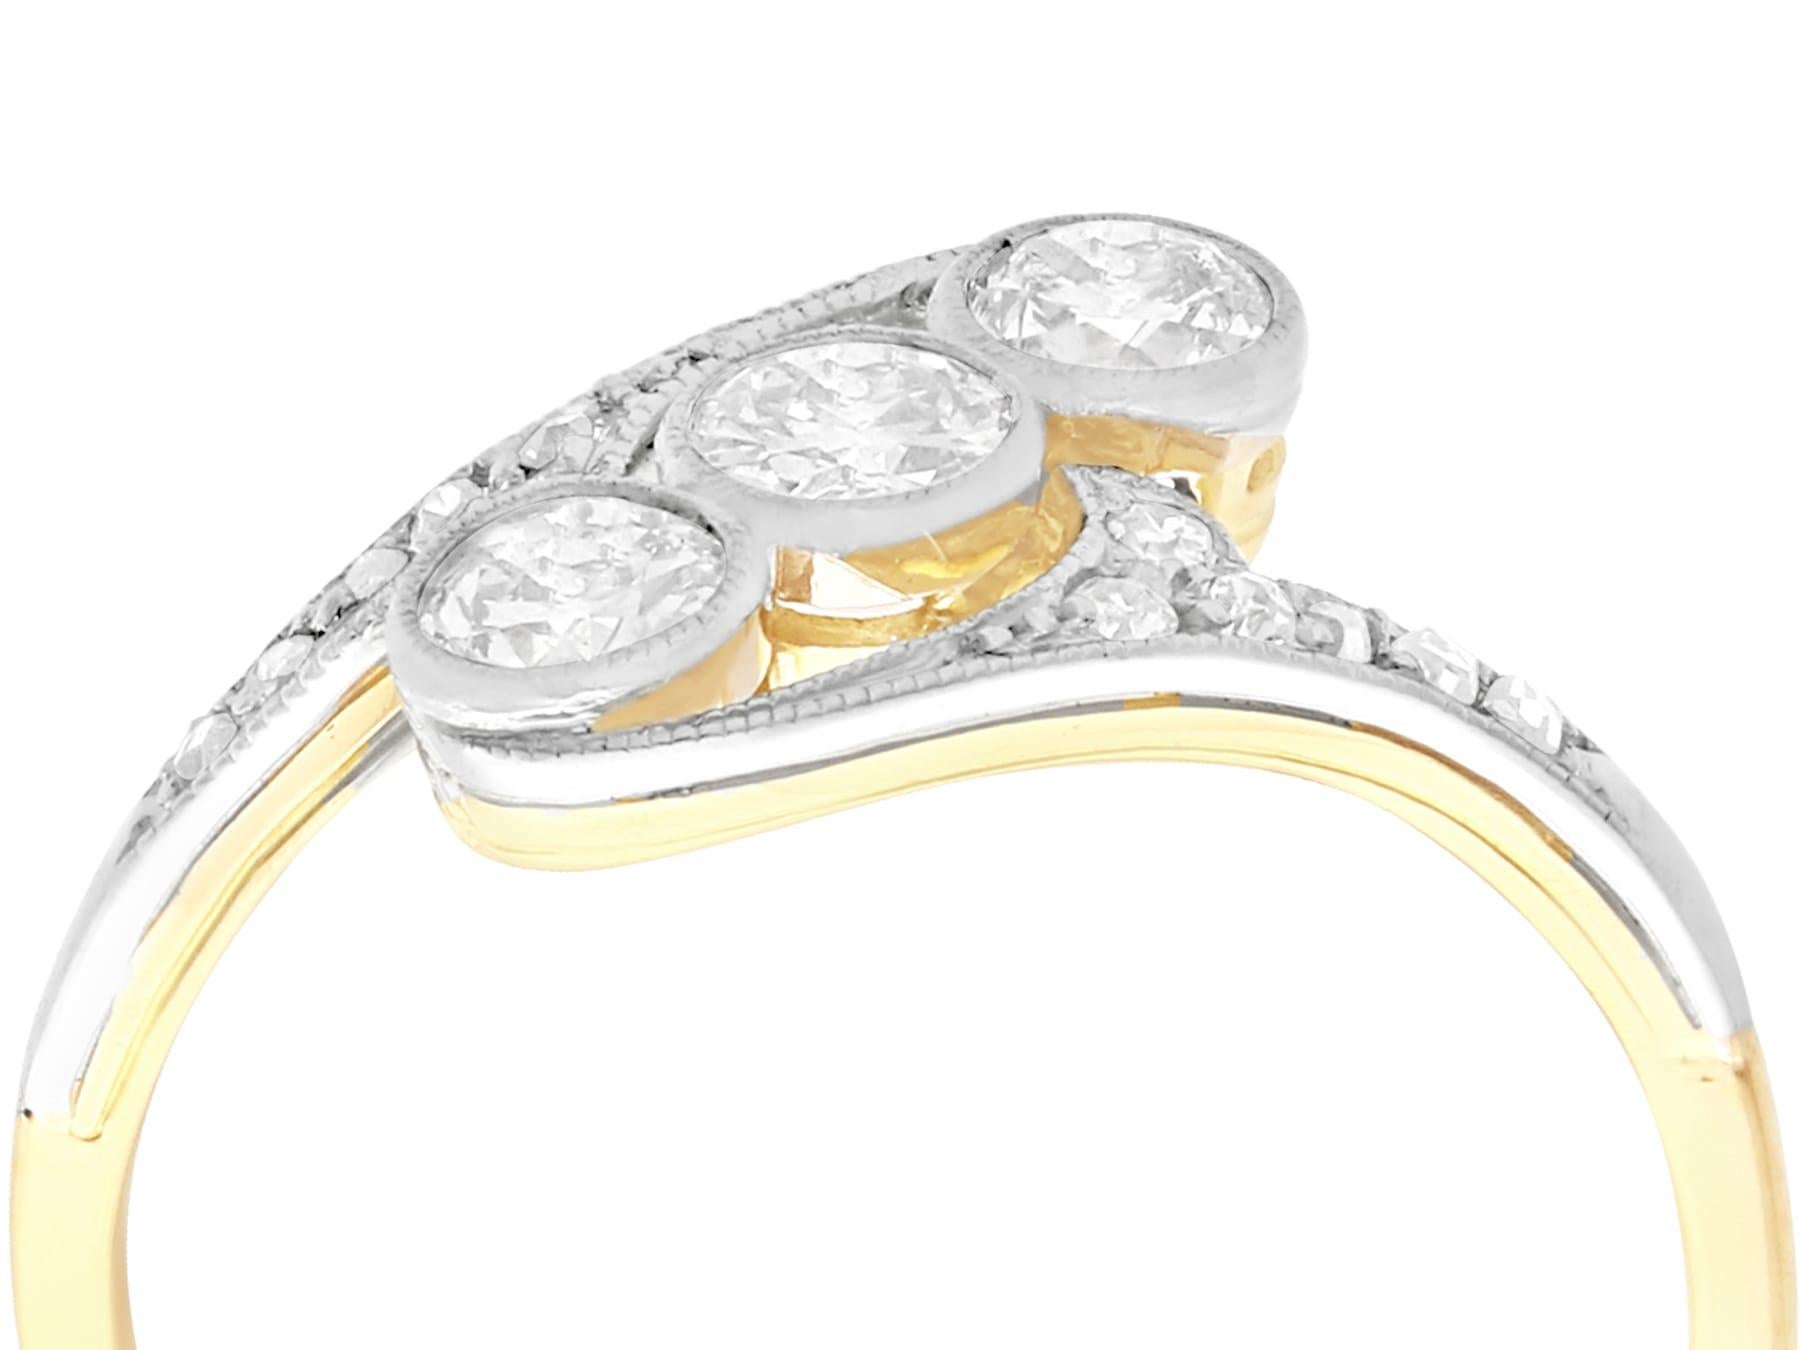 Eine beeindruckende antike 1920er Jahre 0,62 Karat Diamant und 18 Karat Gelbgold, 18 Karat Weißgold Set Trilogie Twist Ring; Teil unserer vielfältigen antiken Schmucksammlungen.

Dieser feine und beeindruckende Trilogie-Diamantring wurde in 18 Karat